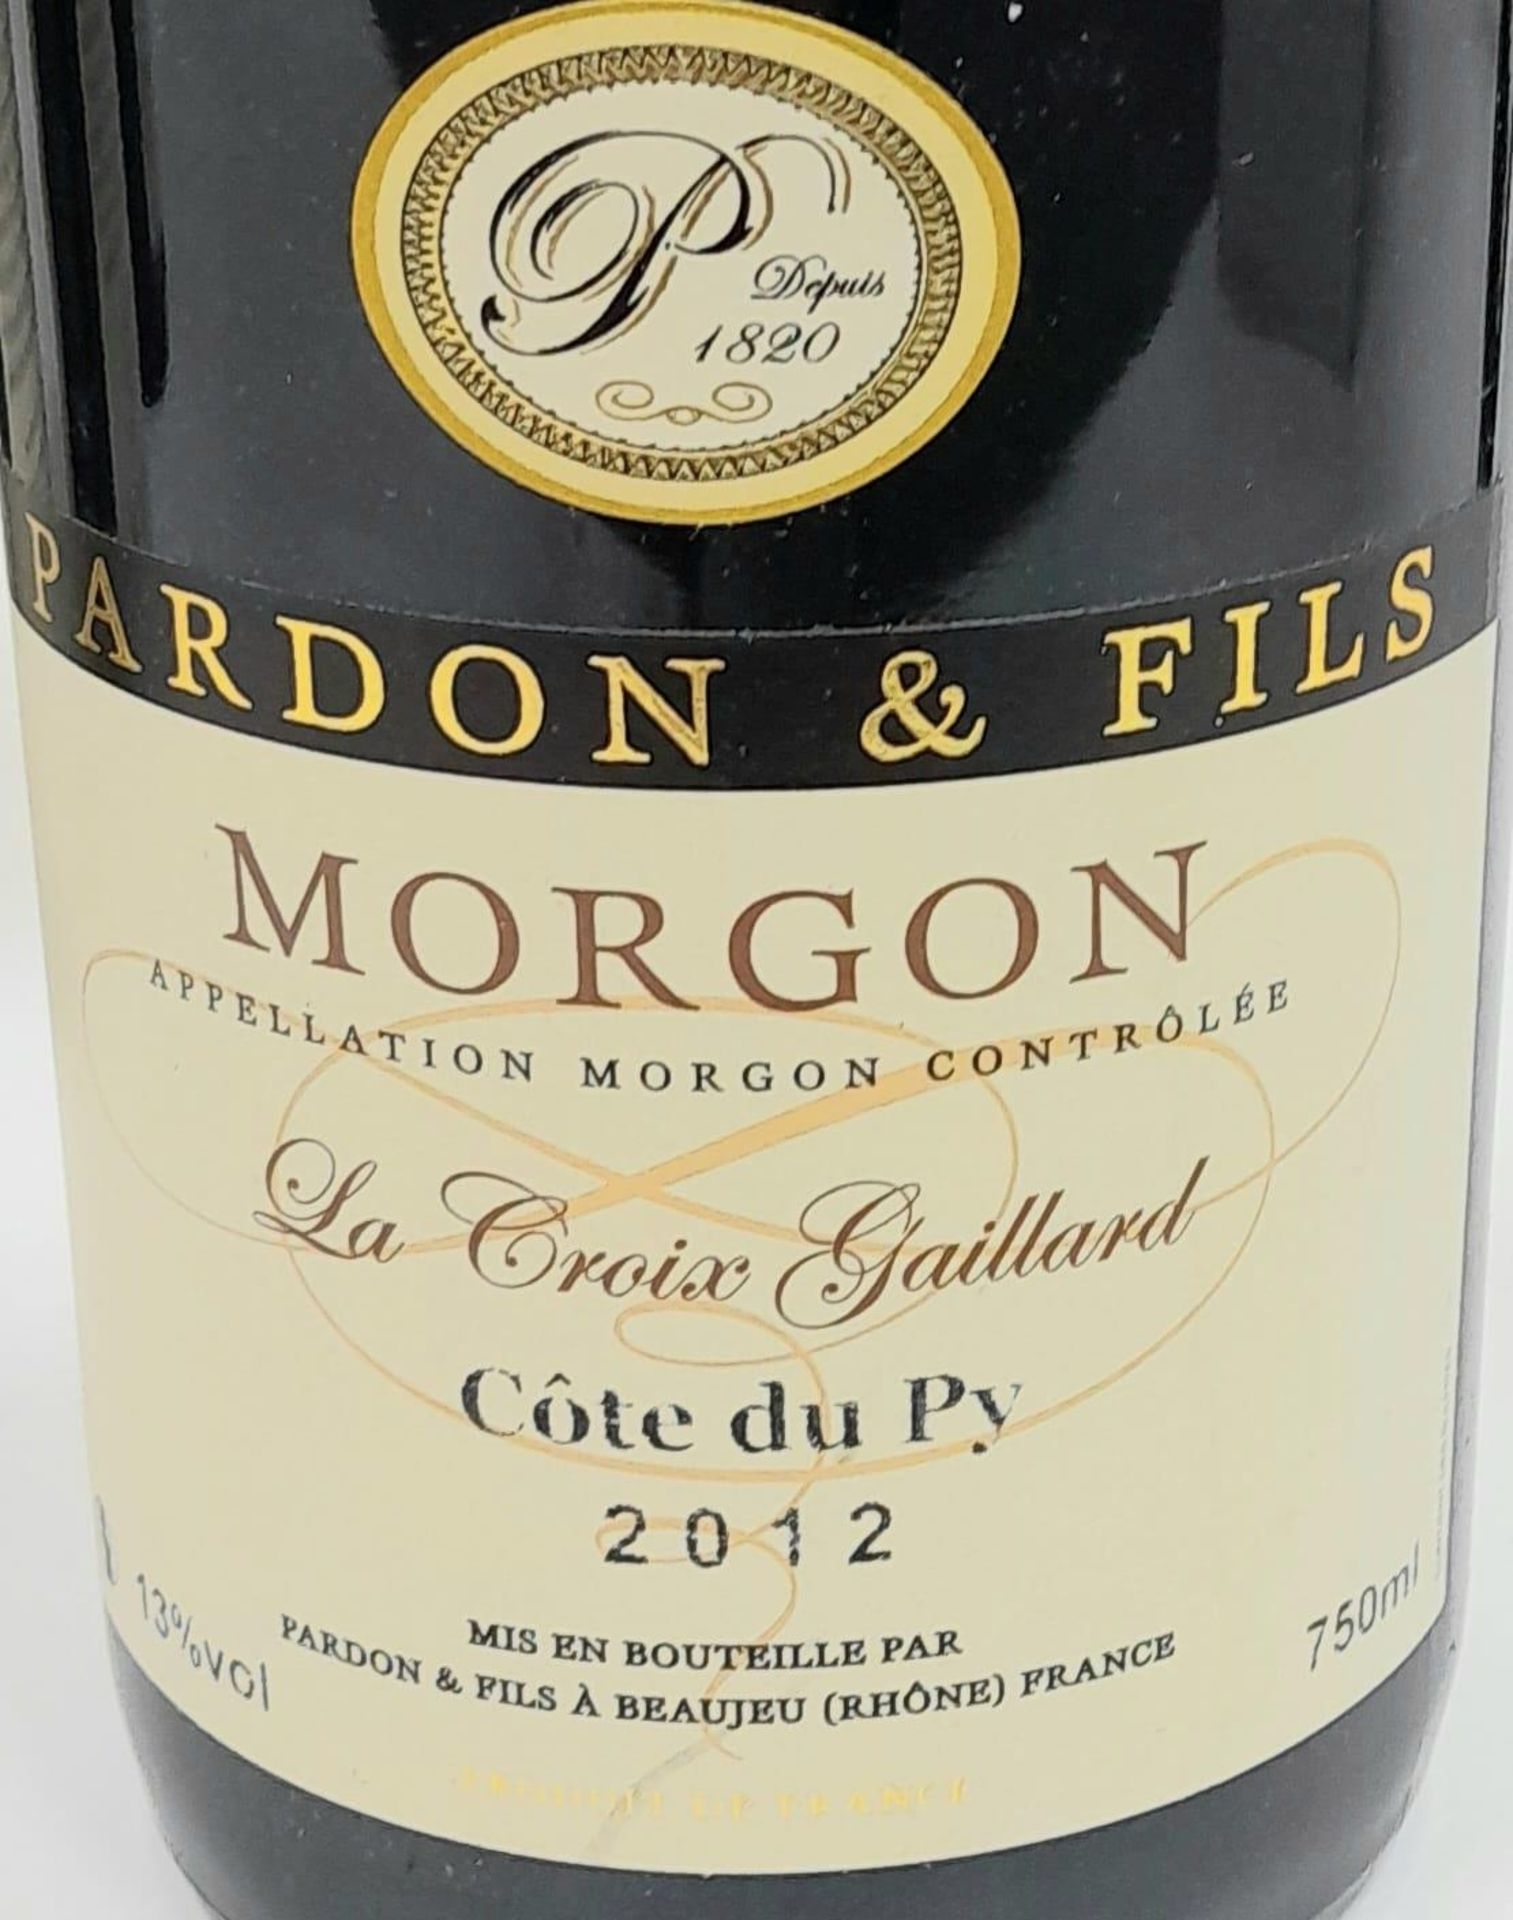 6 Bottles of Morgon Cote Du Py Domaine Pardon et Fils 2012 Cru Beaujolais. - Image 4 of 6